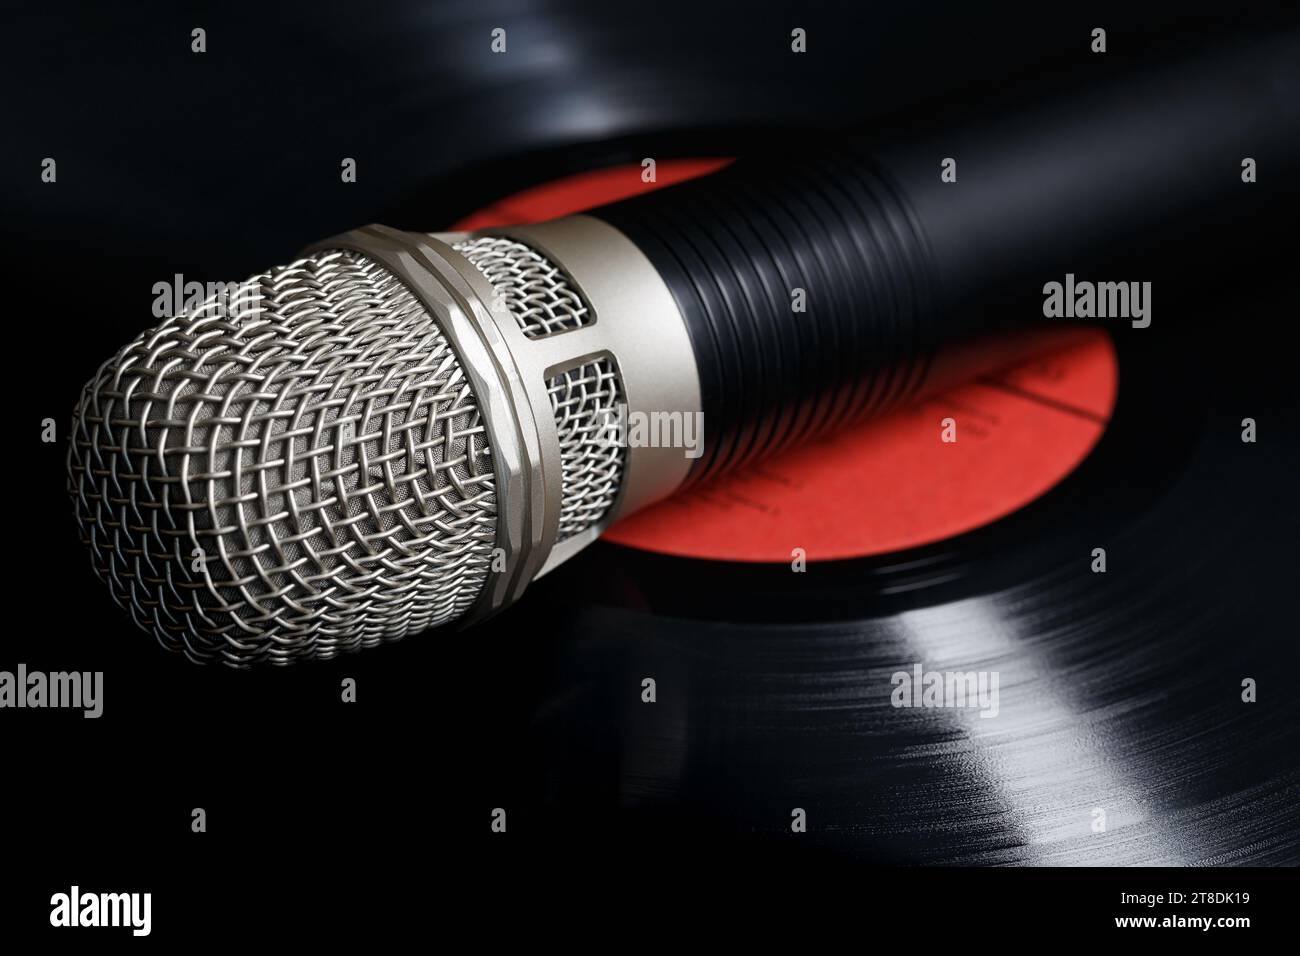 Le microphone repose sur un disque vinyle, avec la réflexion de la lumière soulignant les pistes sonores. Concept d'enregistrement sonore analogique Banque D'Images